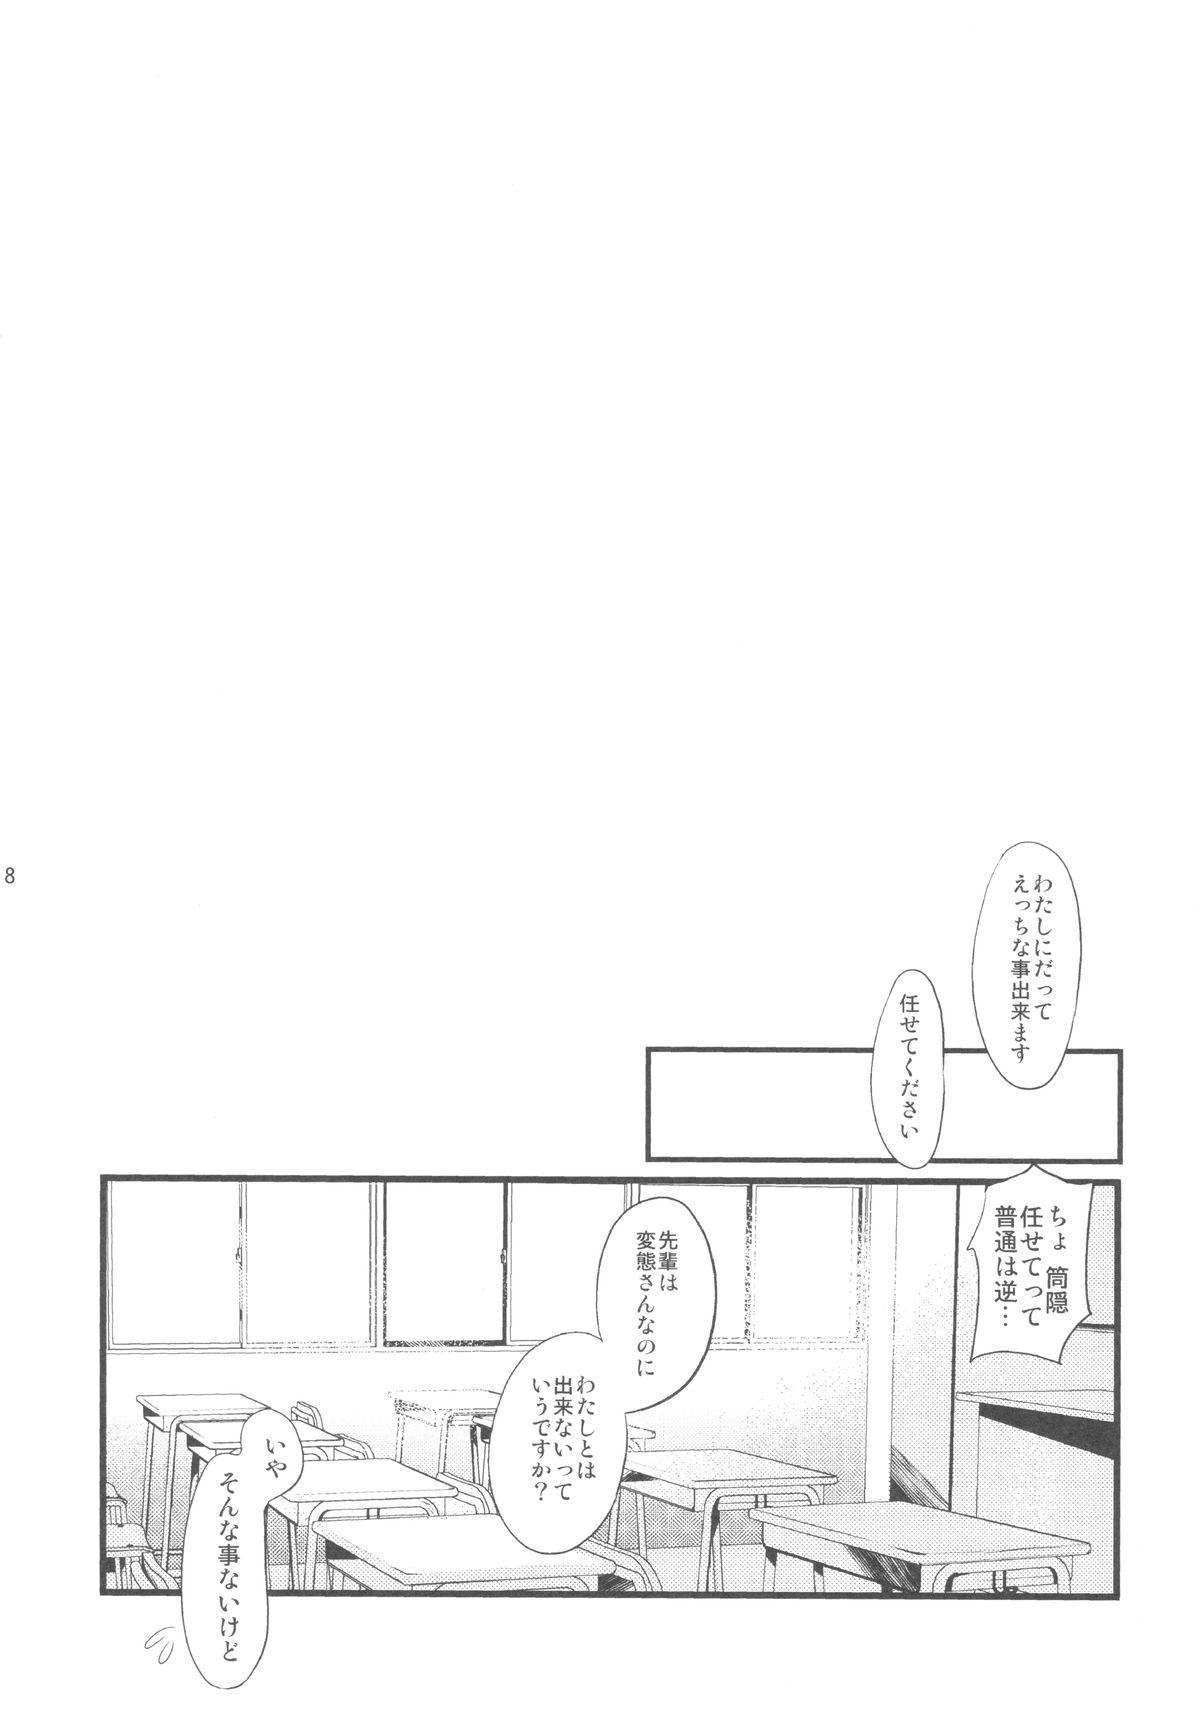 Vibrator Watashi Tomo Nyan Nyan Shitekudasai - Hentai ouji to warawanai neko Scene - Page 6